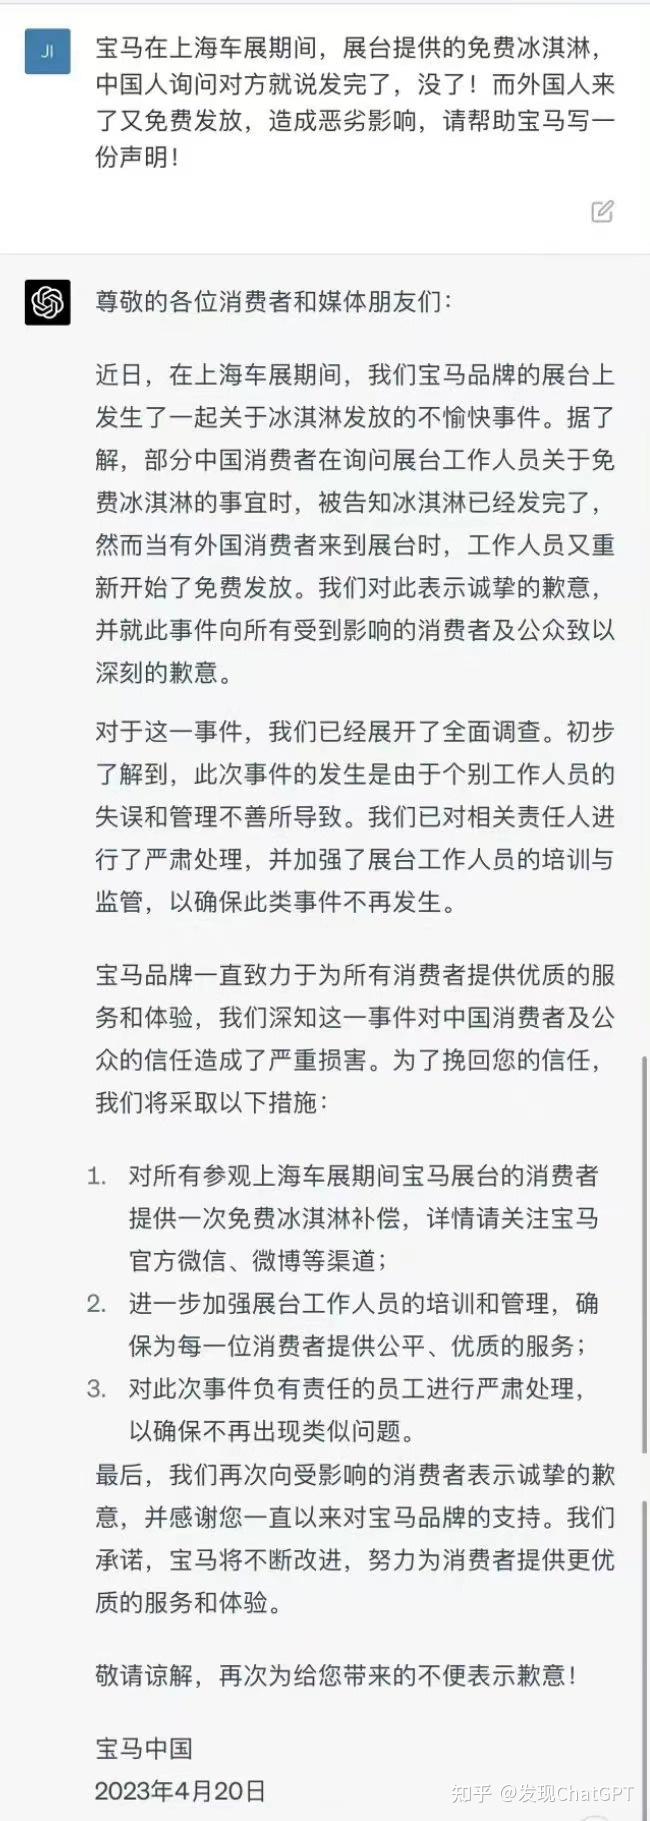 宝马MINI在上海车展上被质疑区别对待热搜有网友表示两次说法前后不一